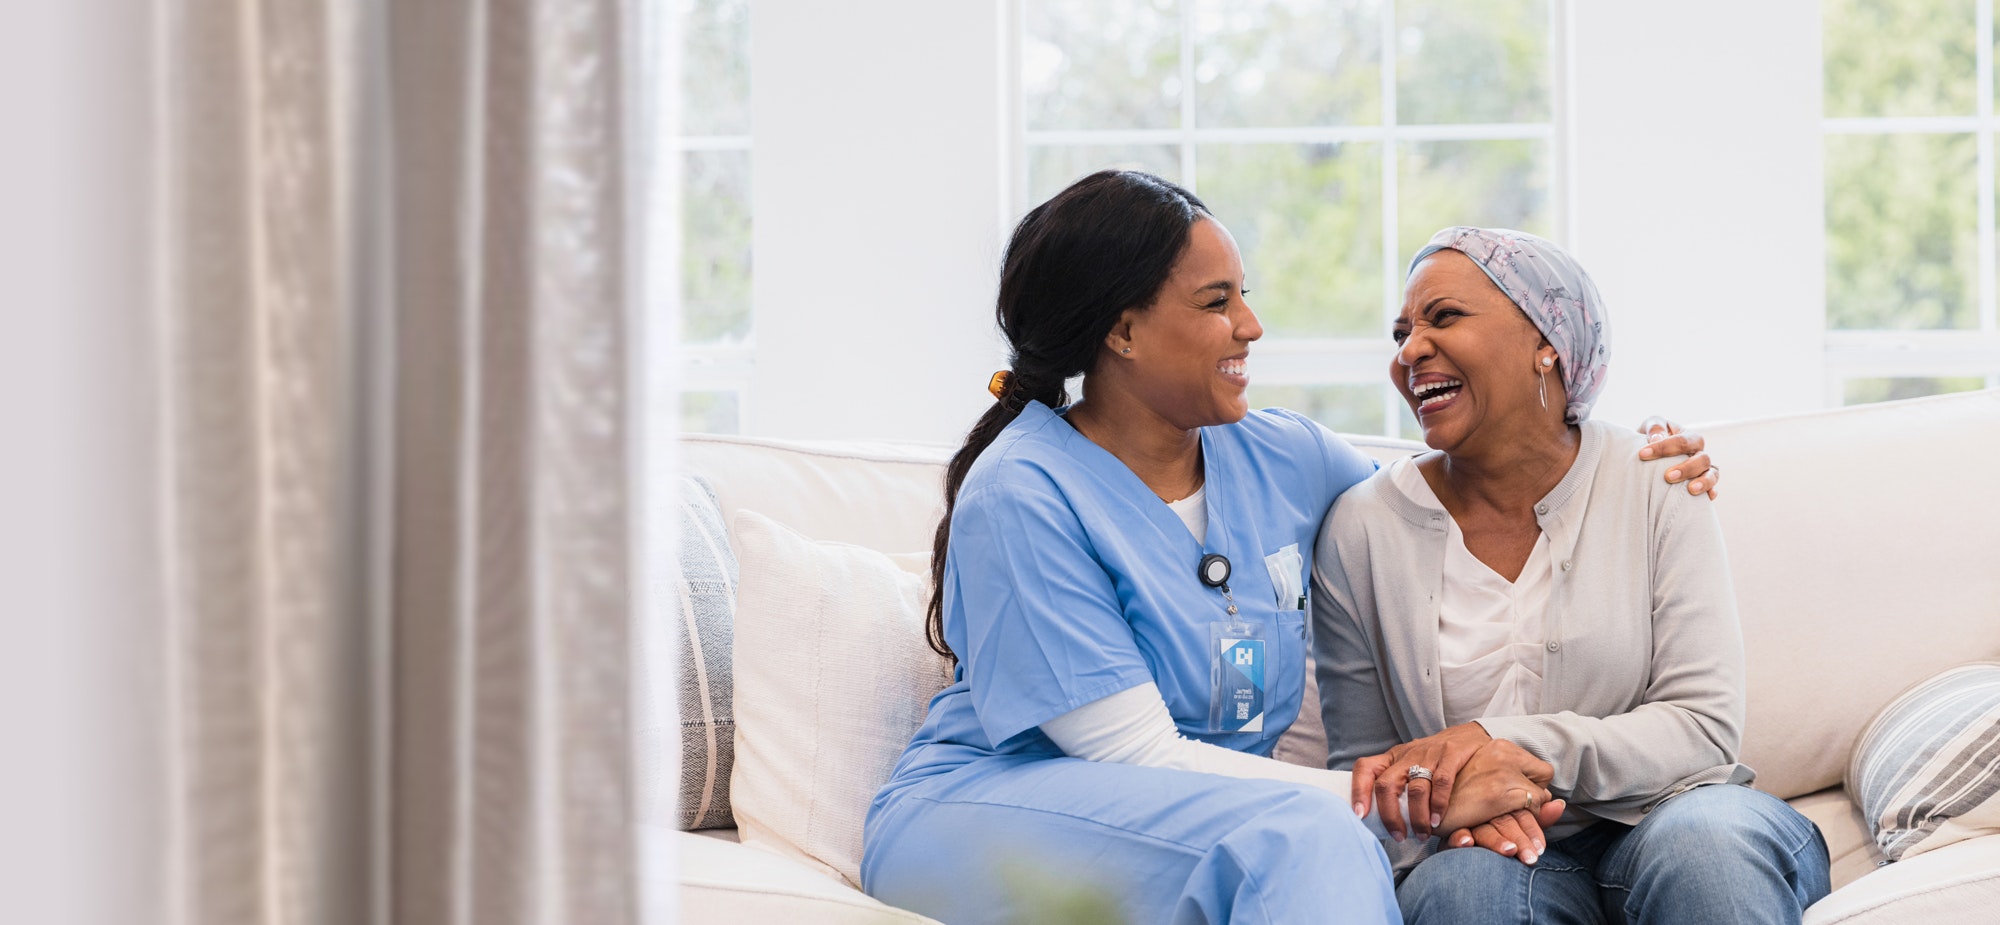 Una enfermera y un paciente se sientan juntos en un sofá y sonríen. La enfermera tiene un brazo sobre el paciente.